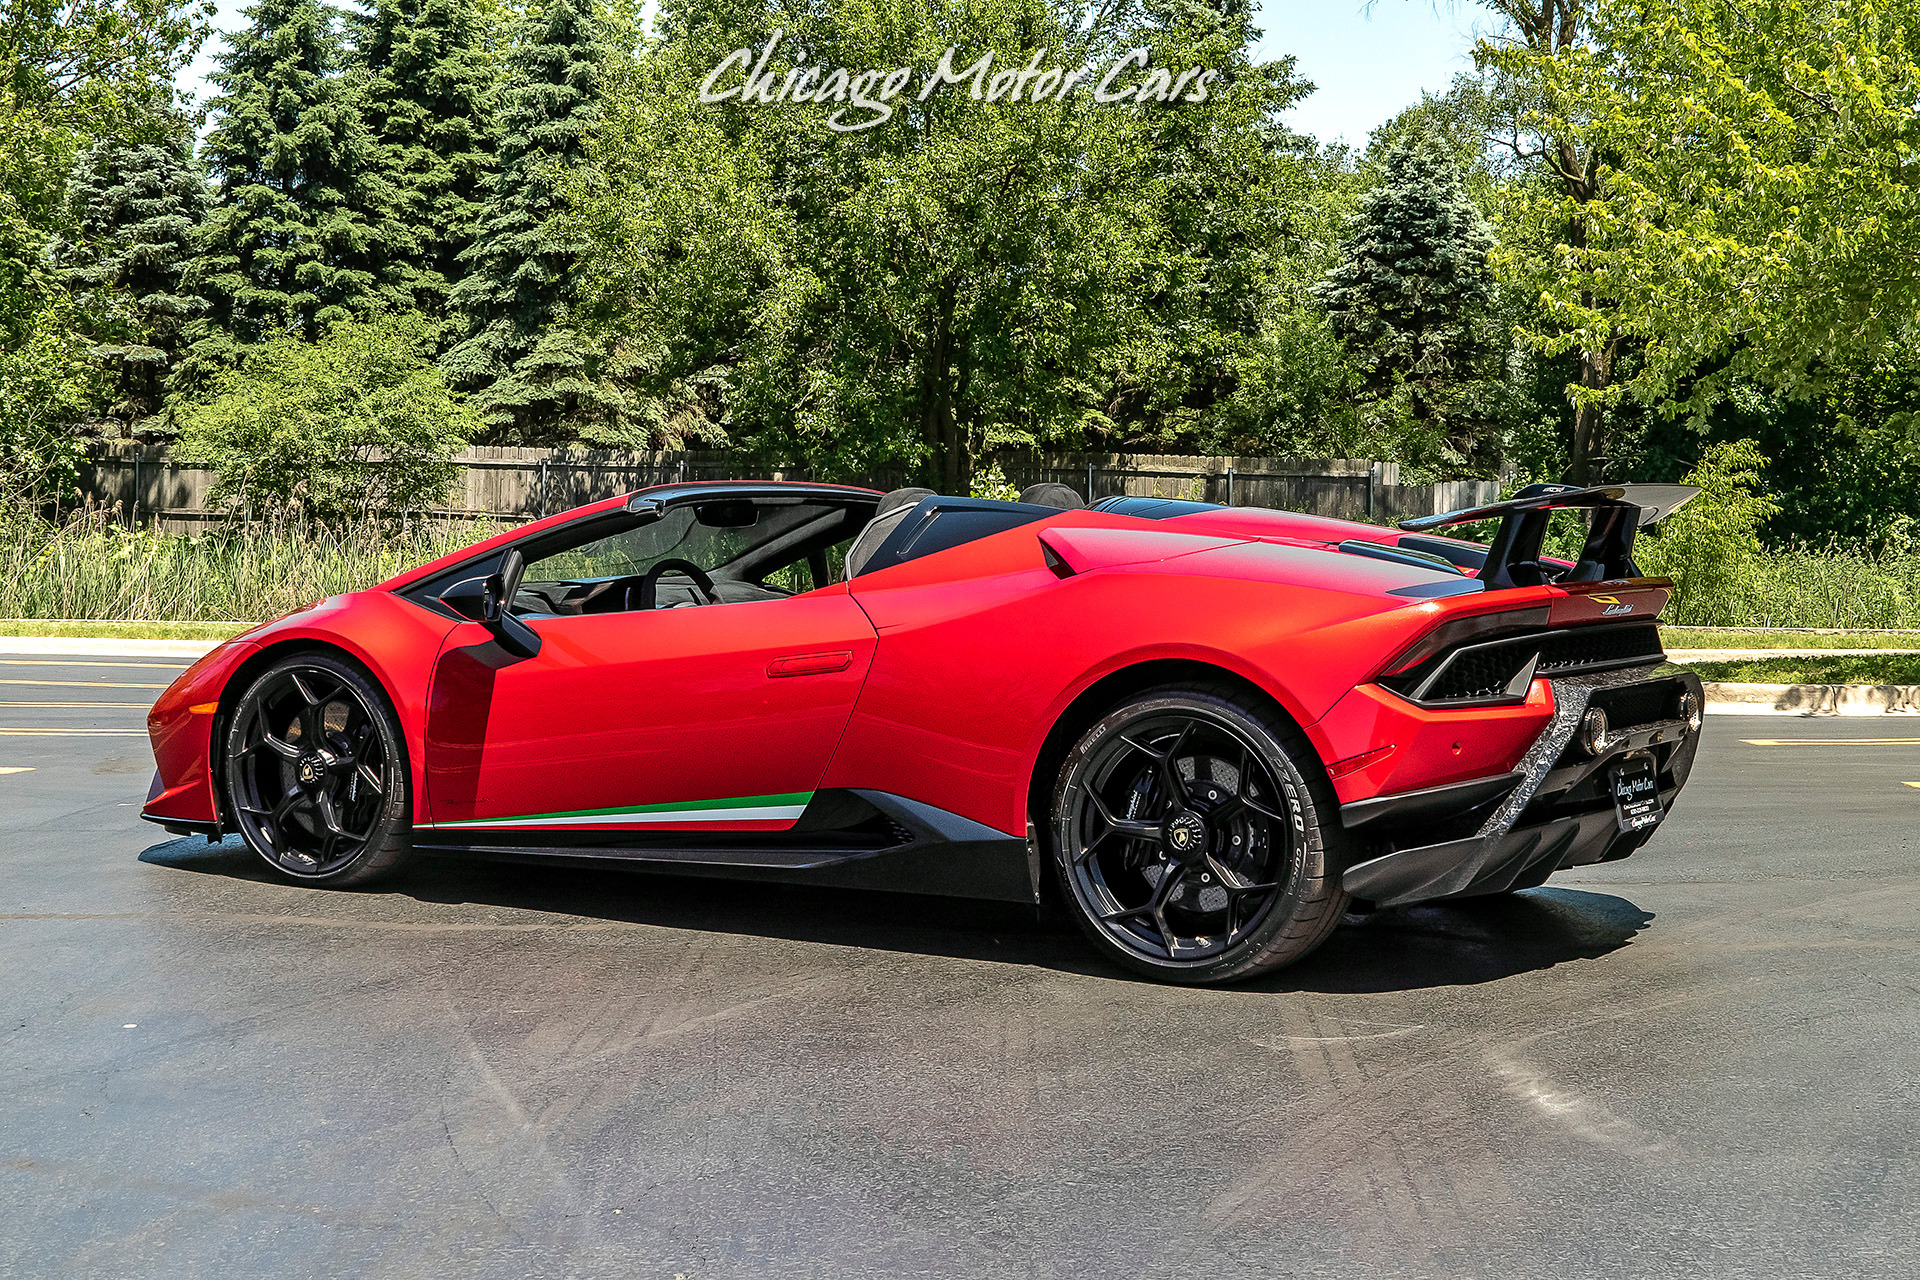 Used-2019-Lamborghini-Huracan-LP640-4-Performante-Spyder-Original-MSRP-361k